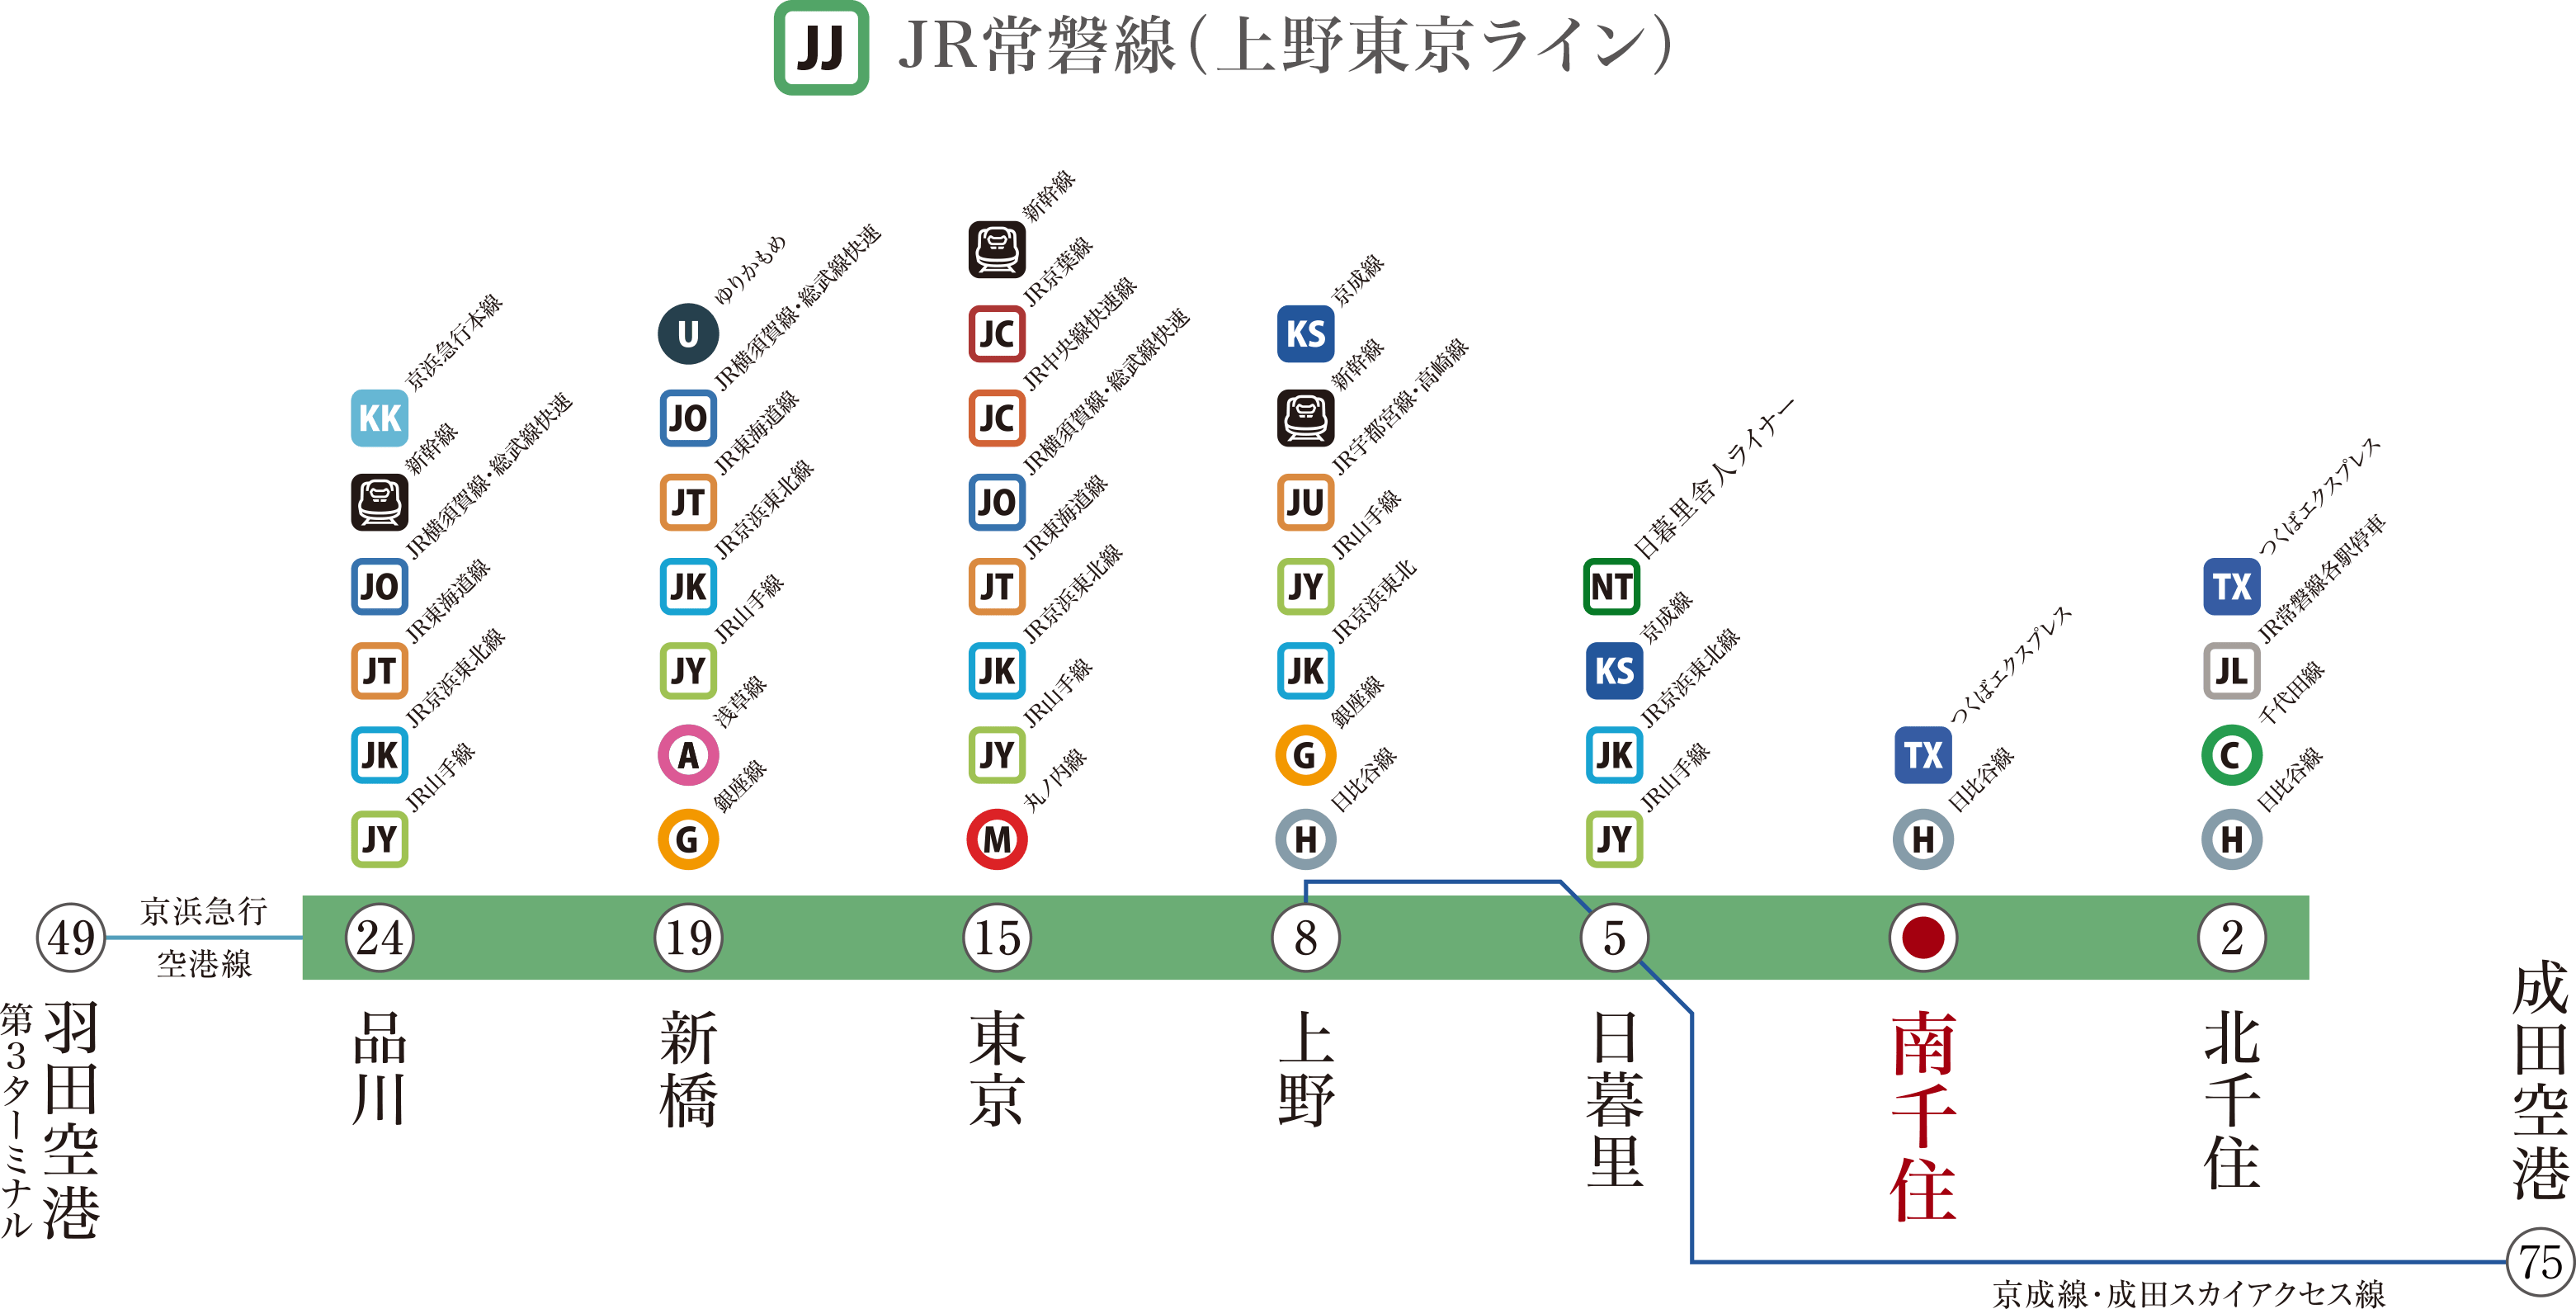 JR常磐線（上野東京ライン）